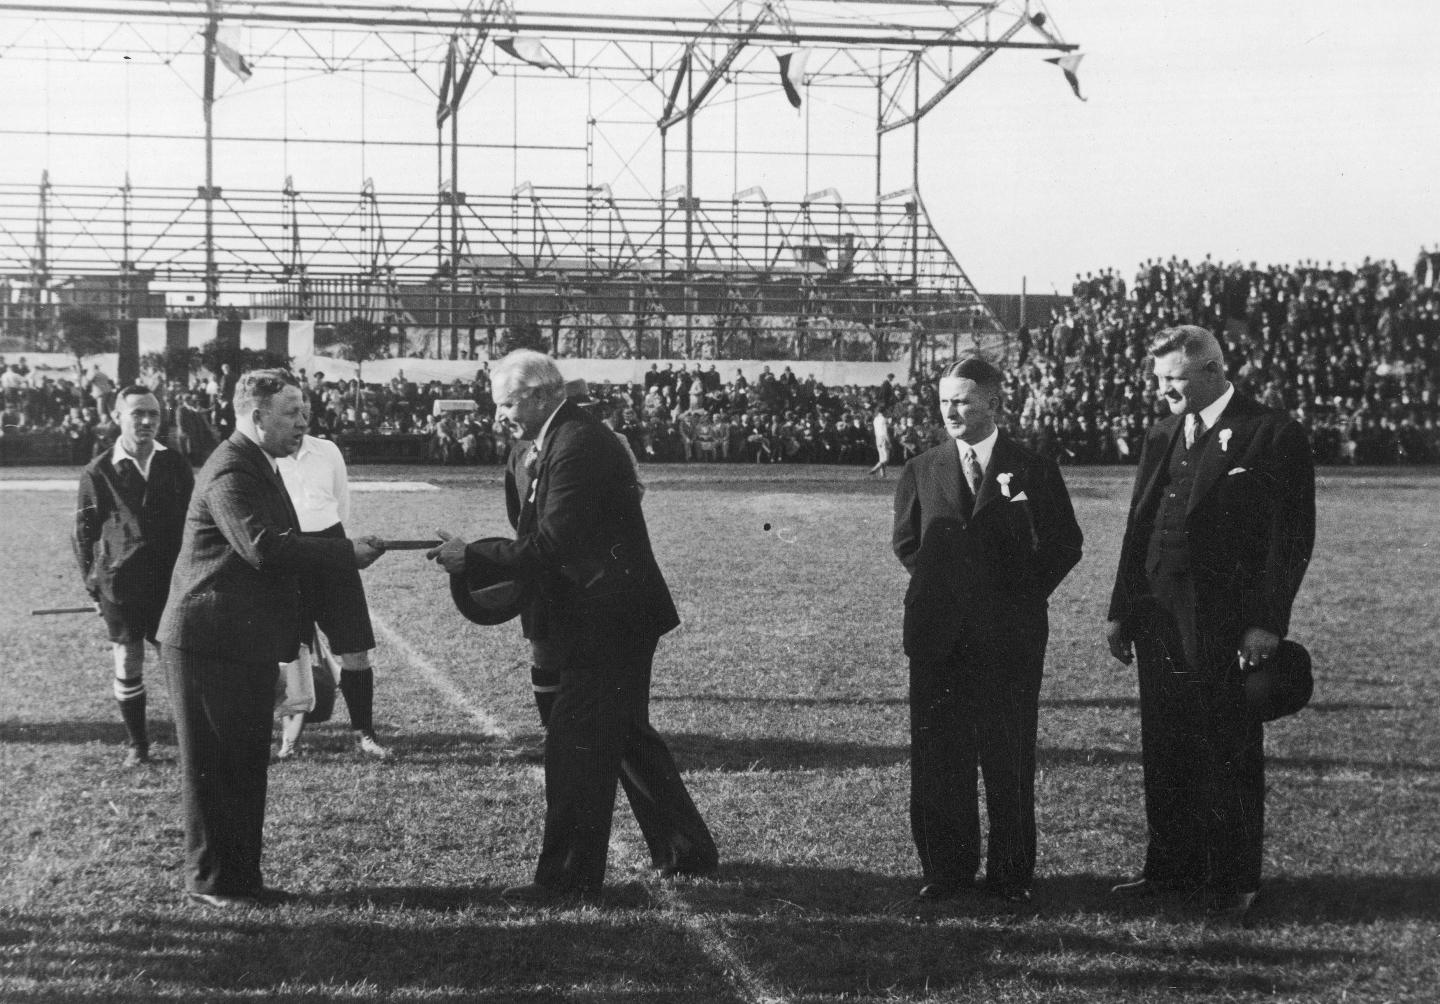 Stadion Ruch Chorzów (1935)